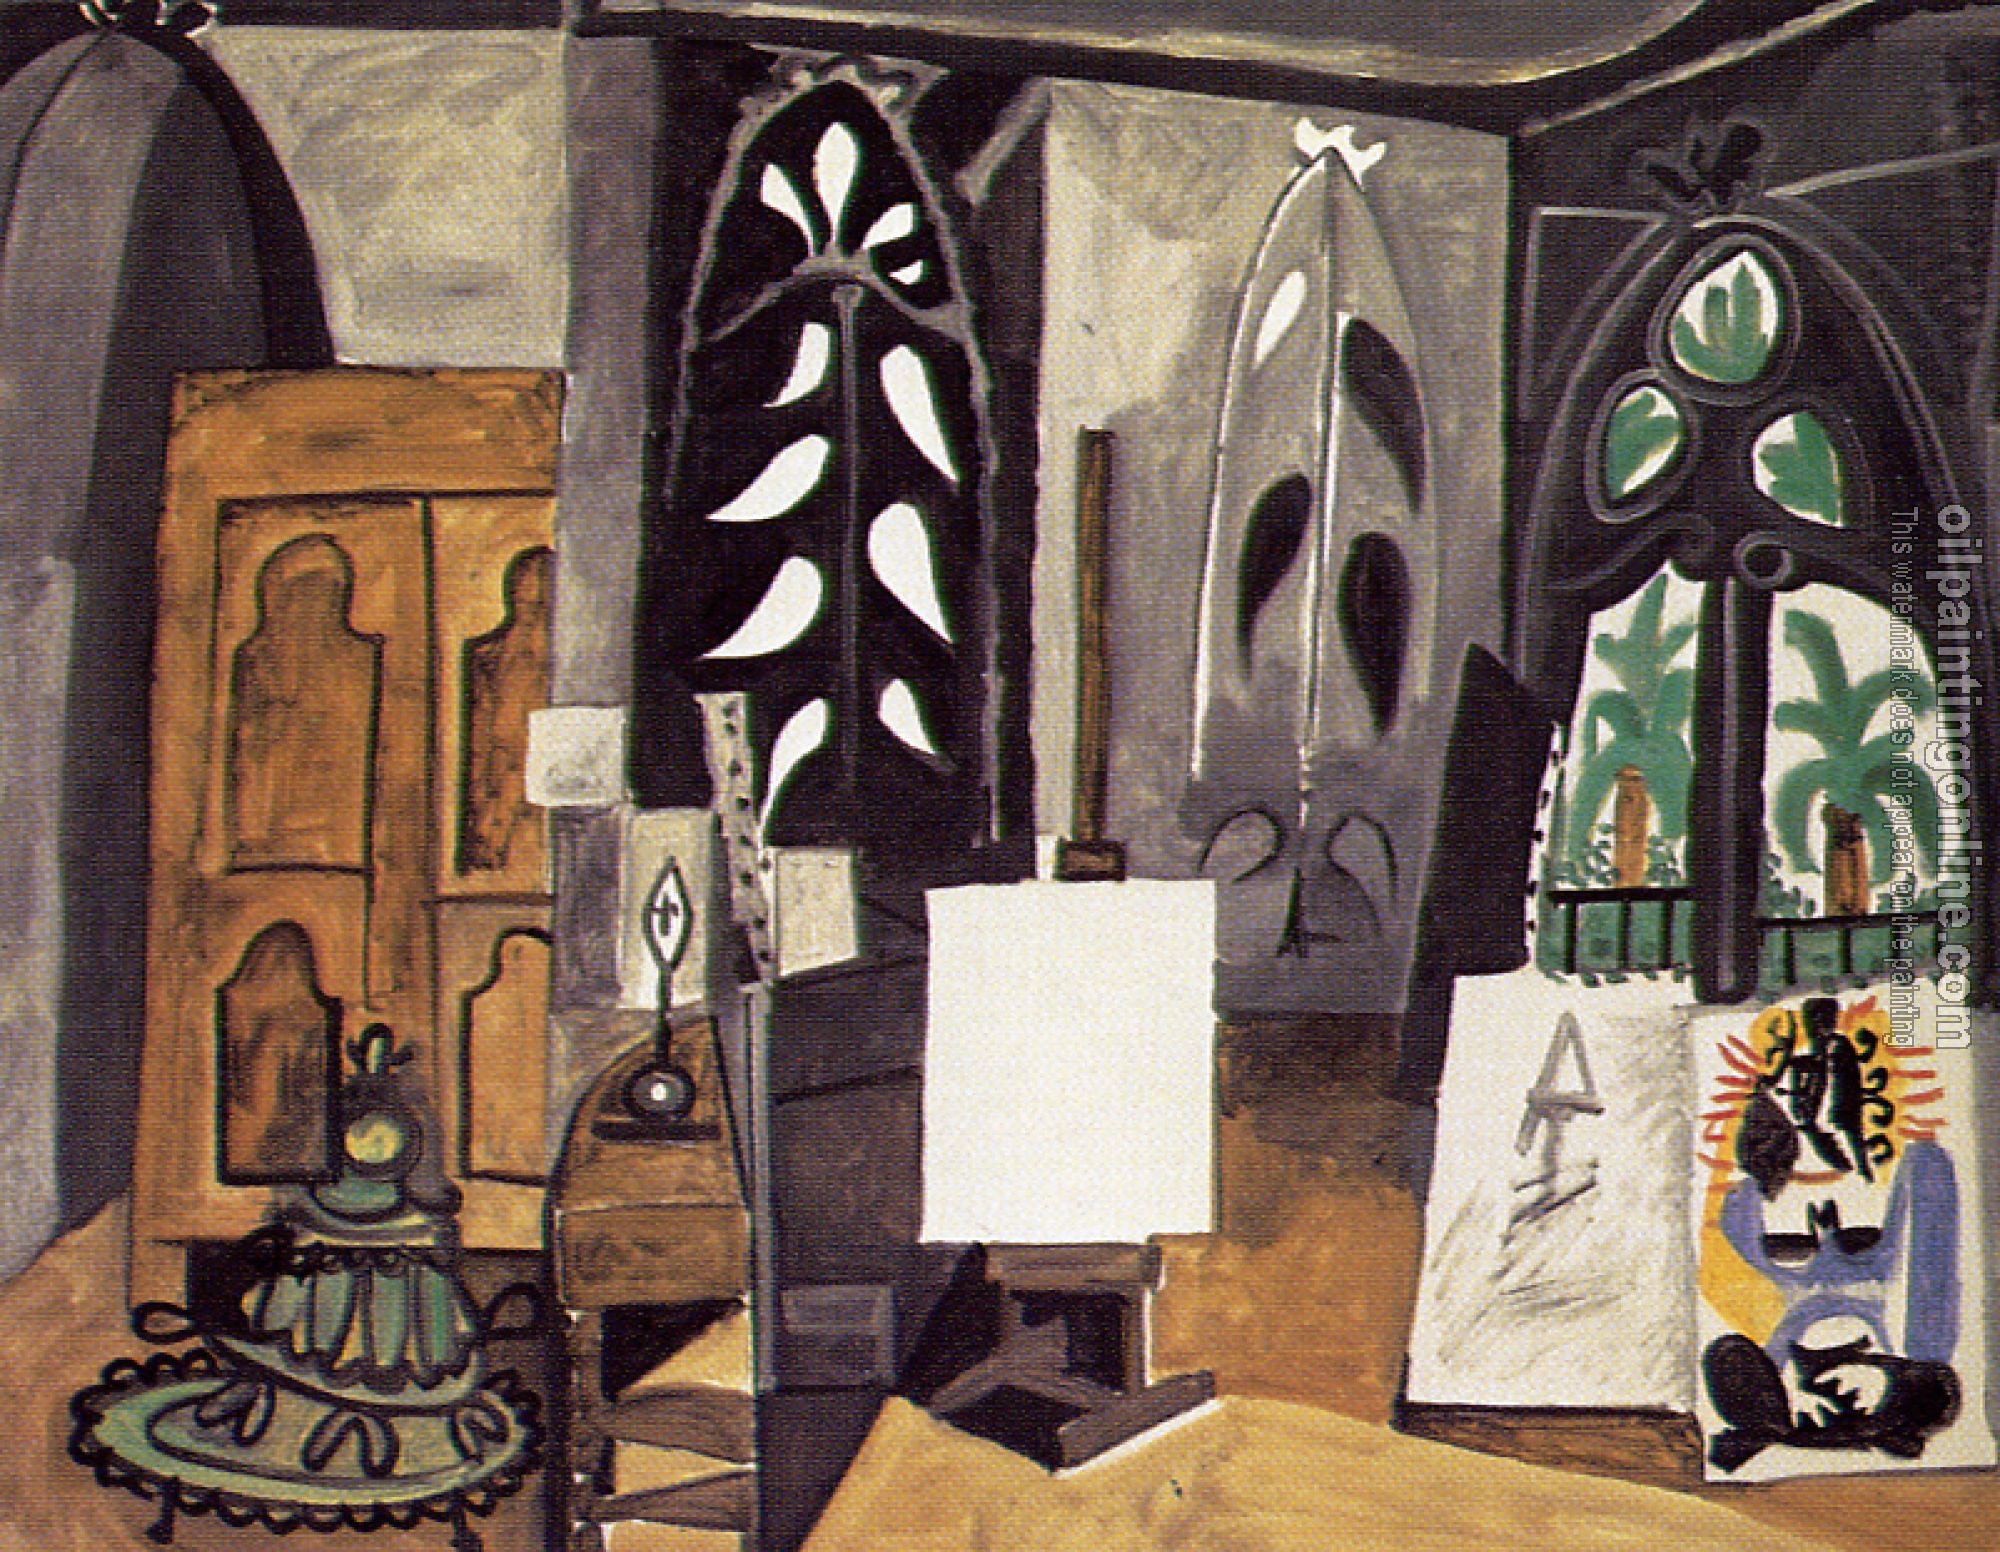 Picasso, Pablo - the studio at la californie cannes